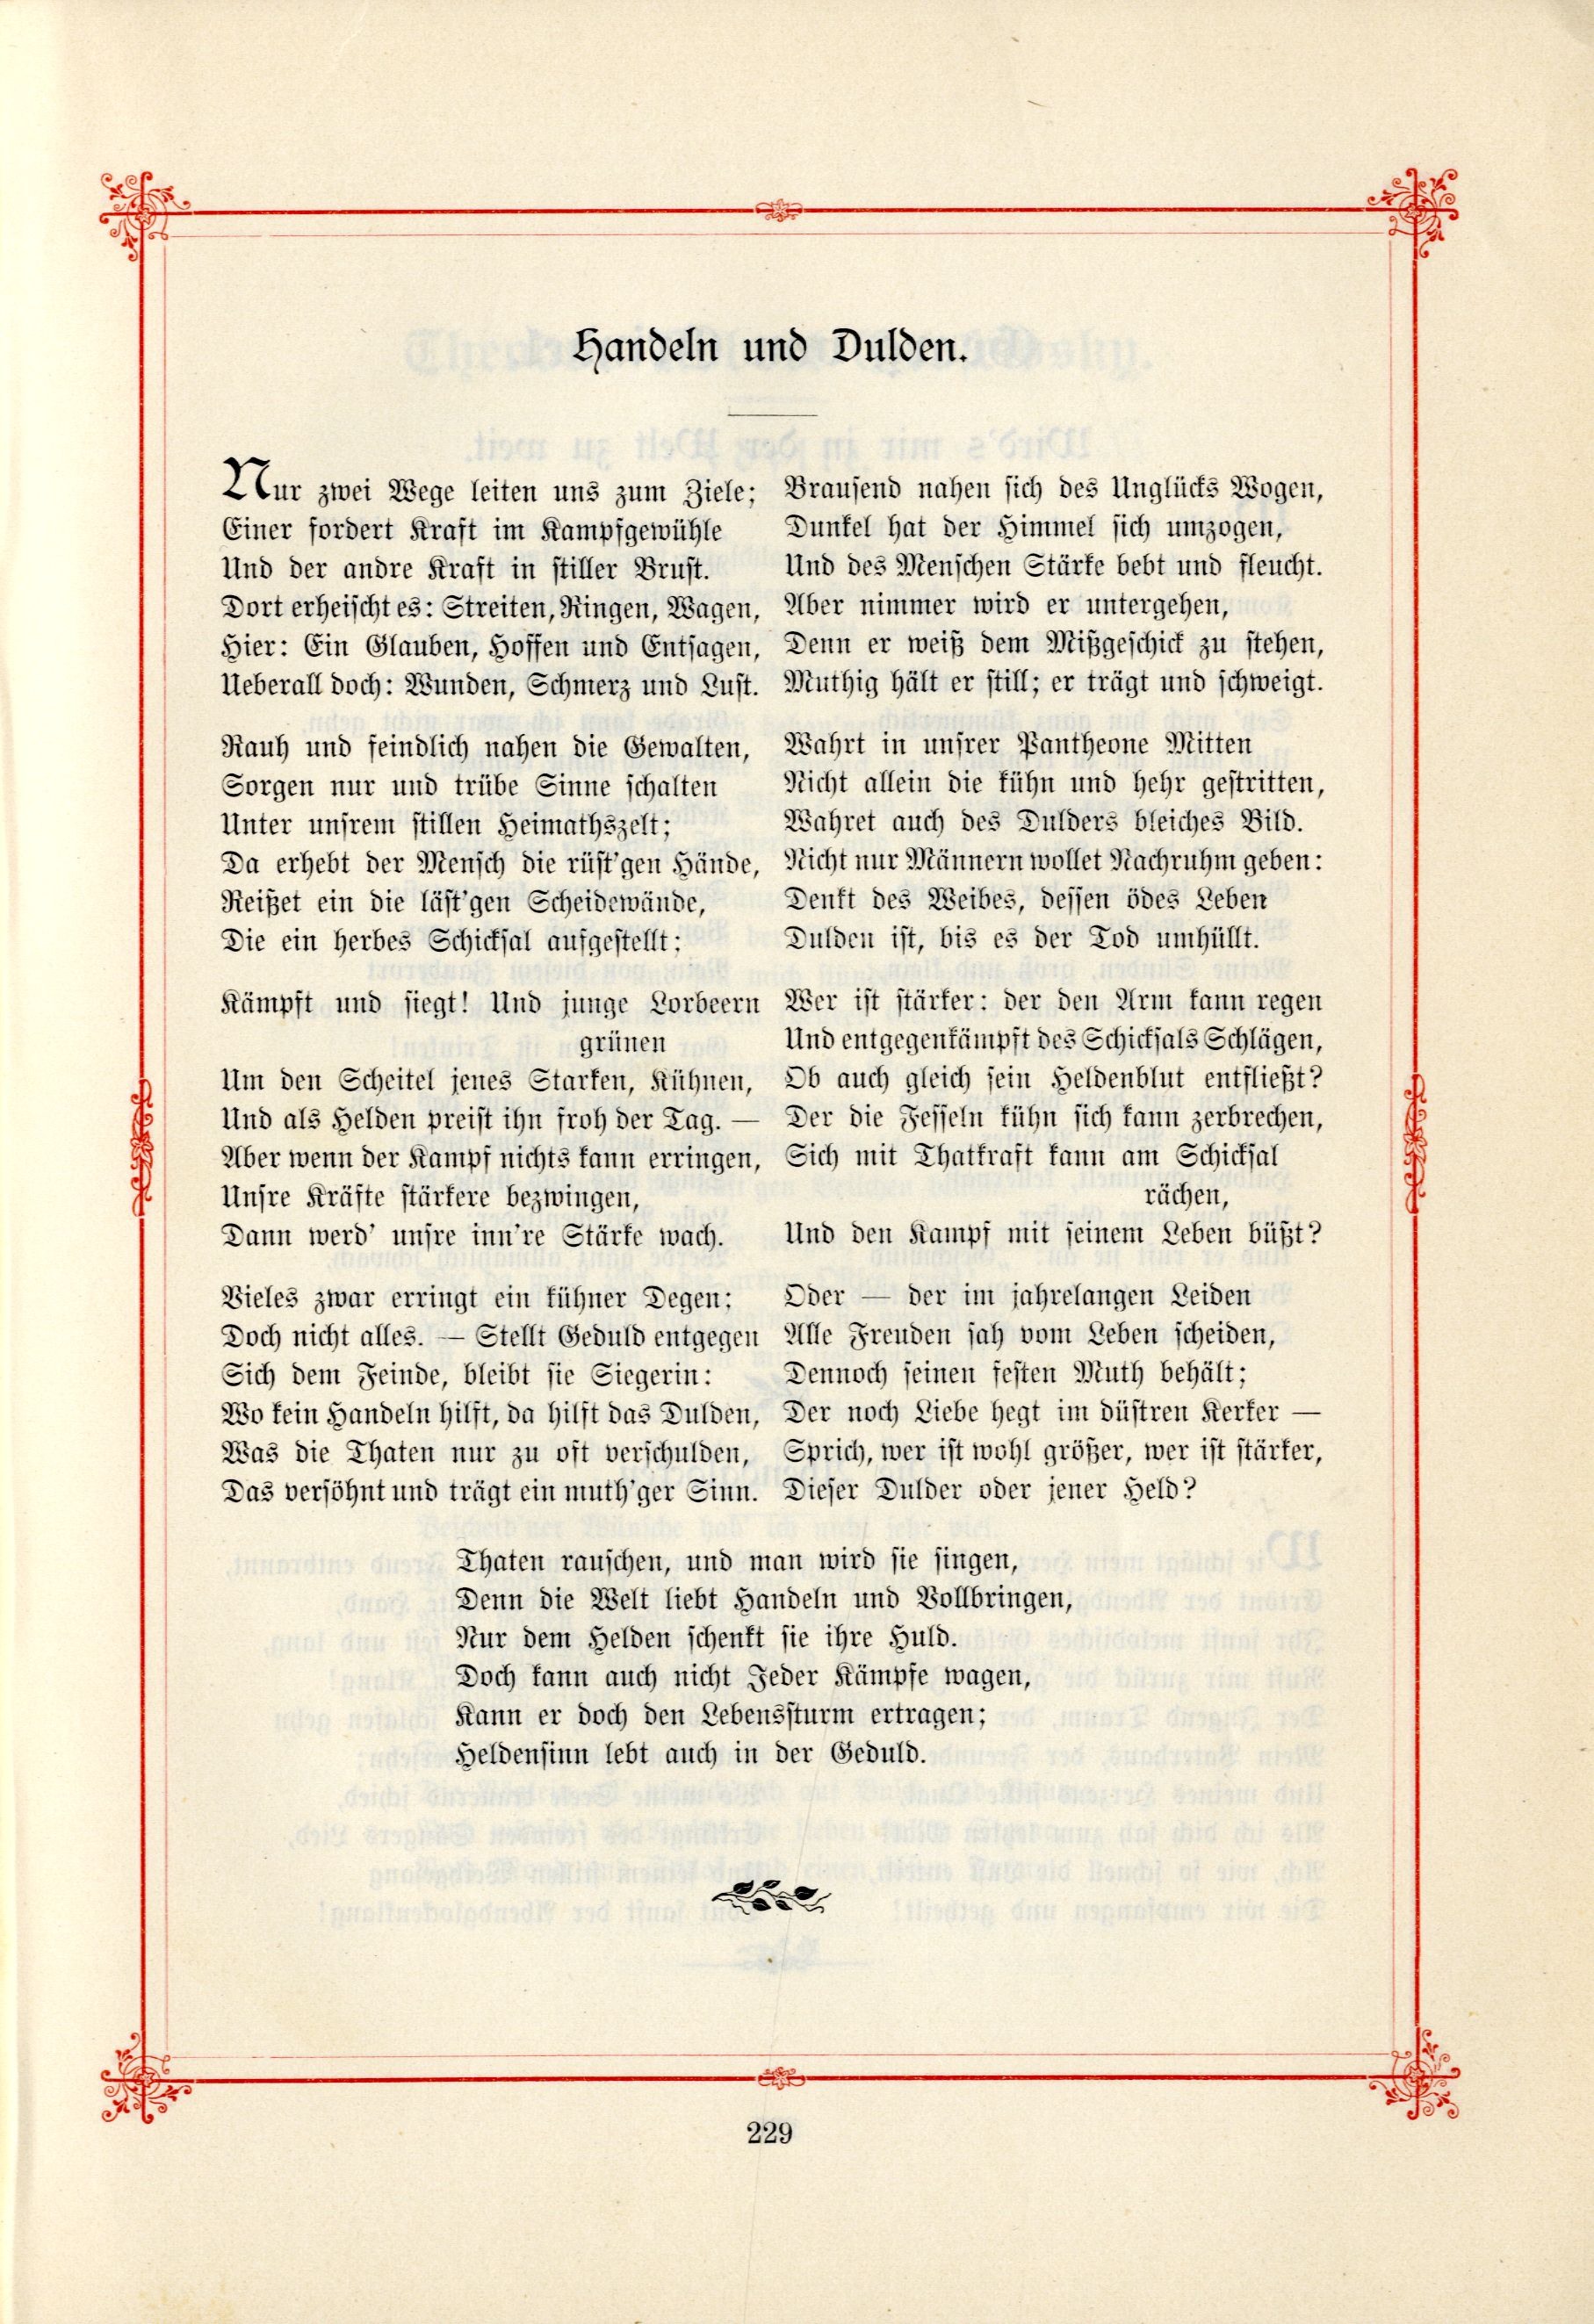 Das Baltische Dichterbuch (1895) | 275. (229) Main body of text